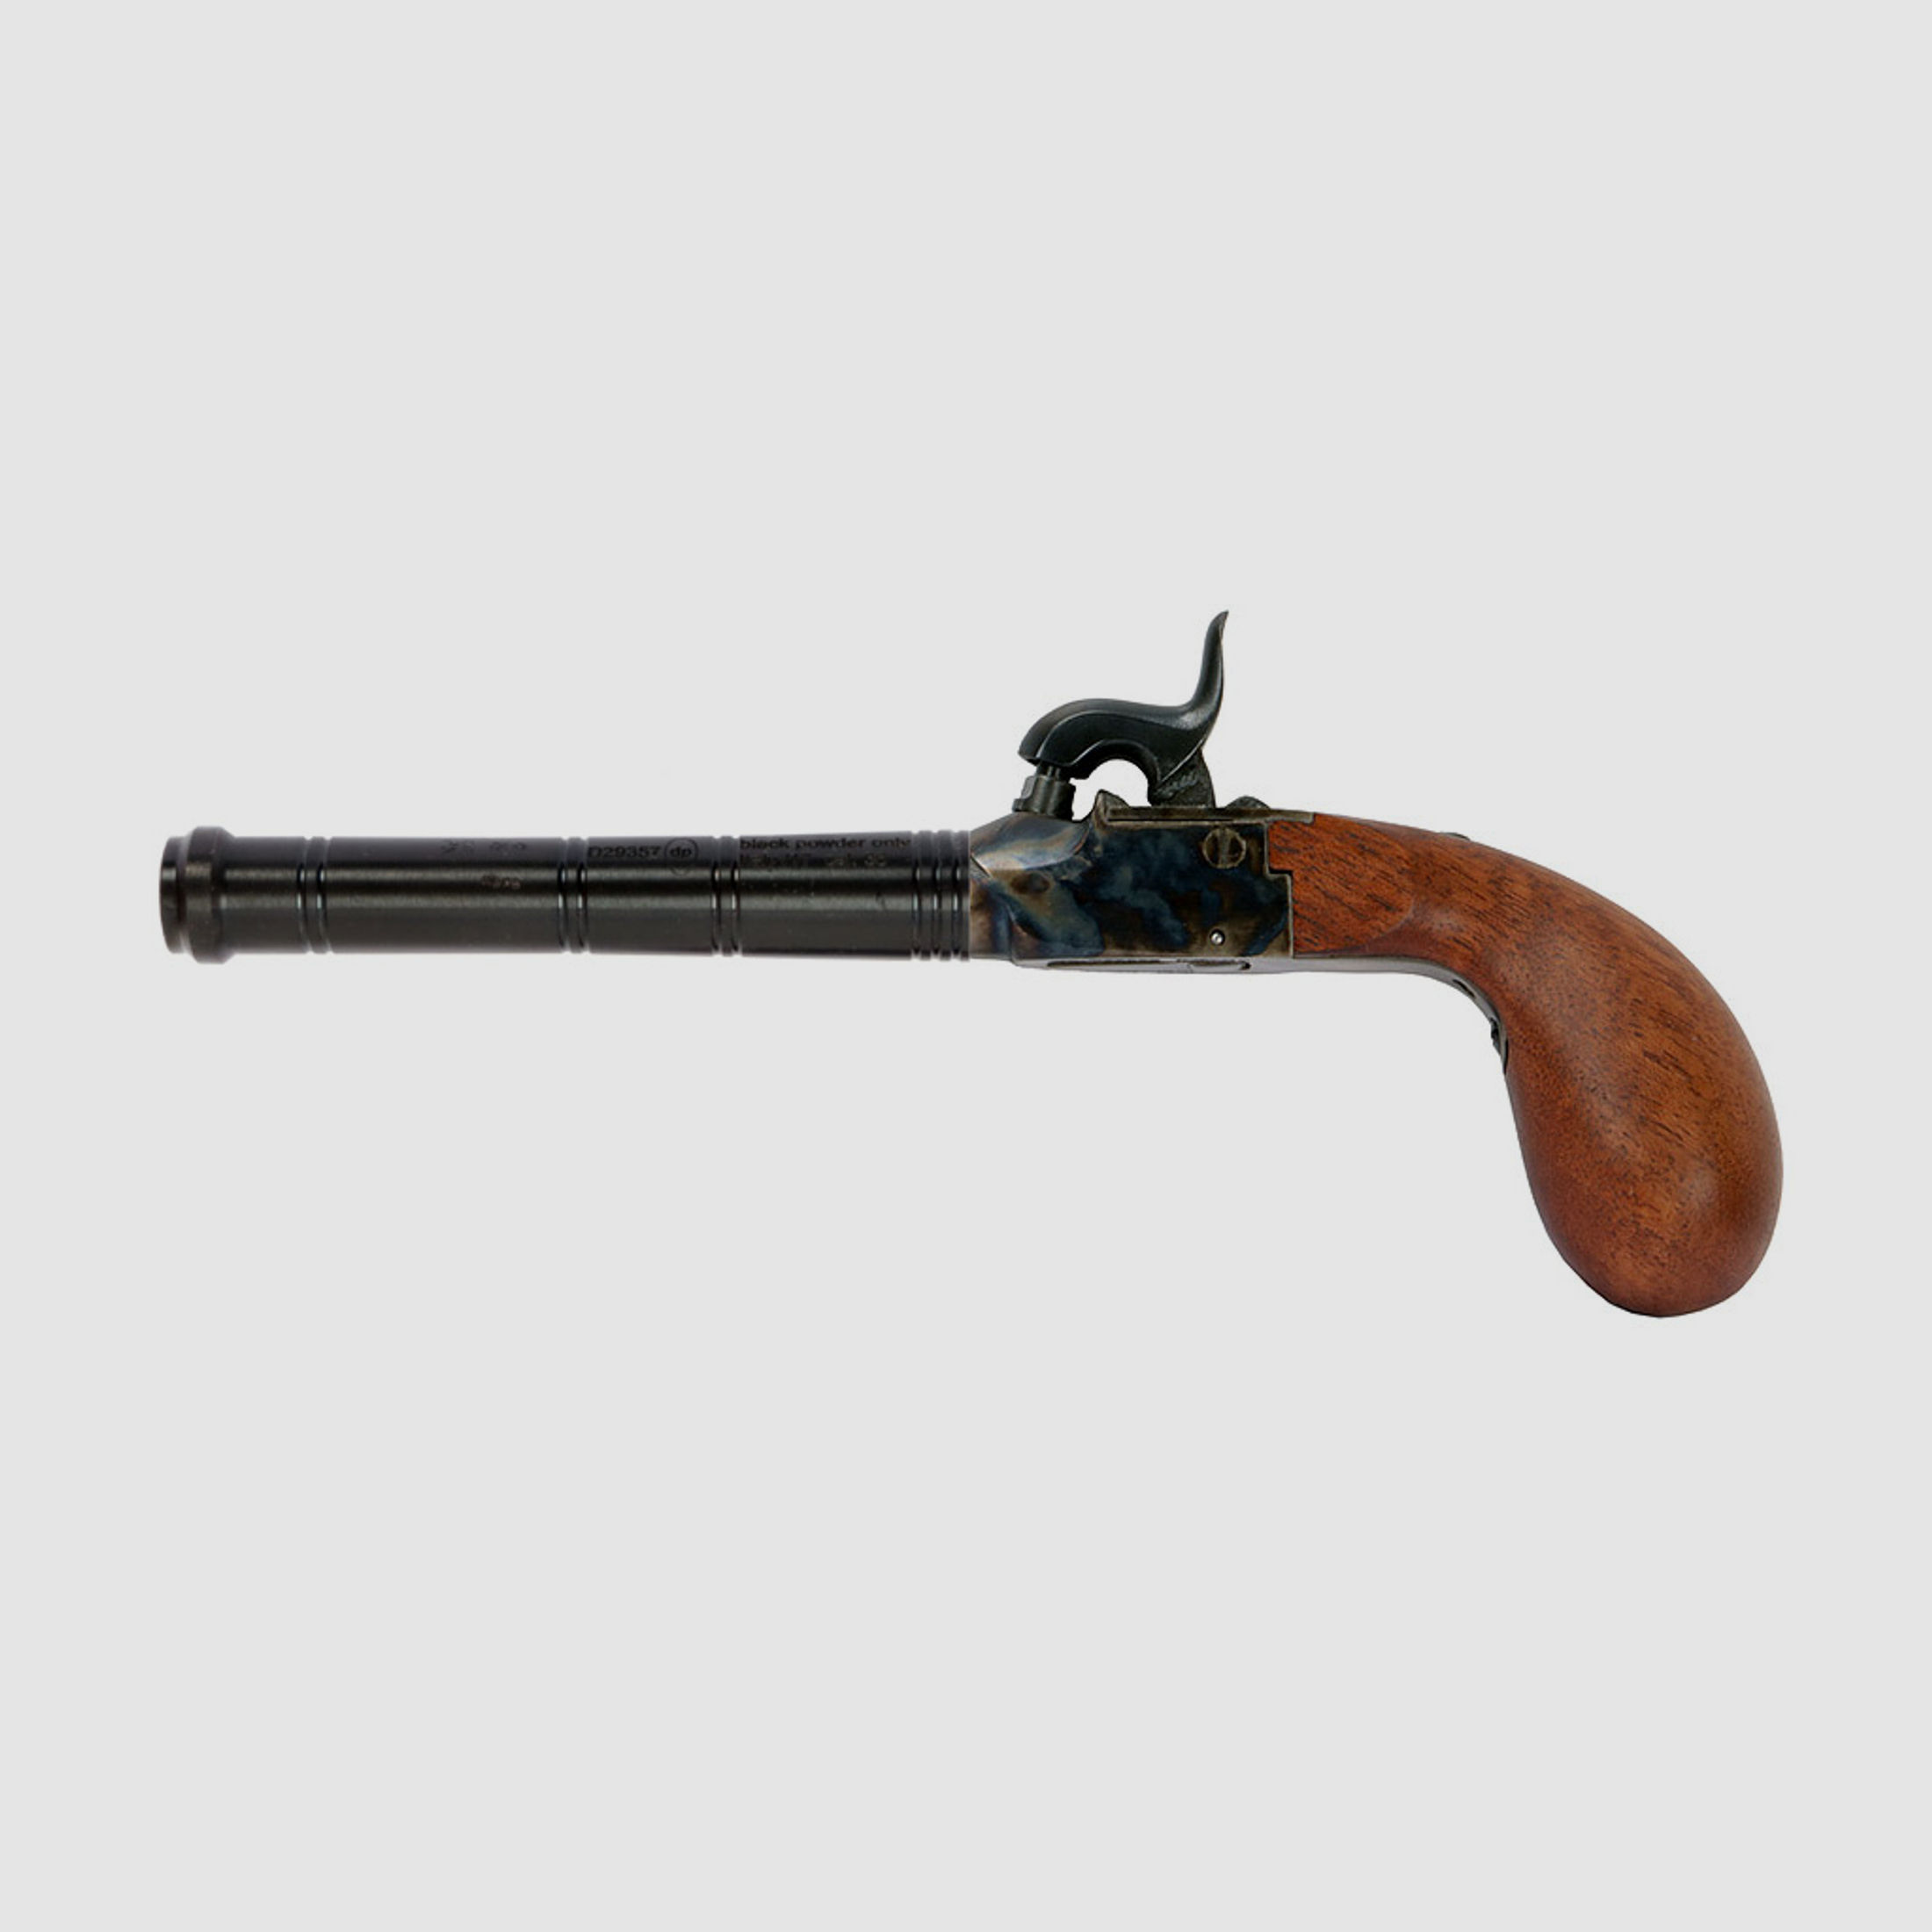 Bausatz Perkussionspistole Pedersoli Derringer Liegi Pocket, Kaliber .36 (P18)